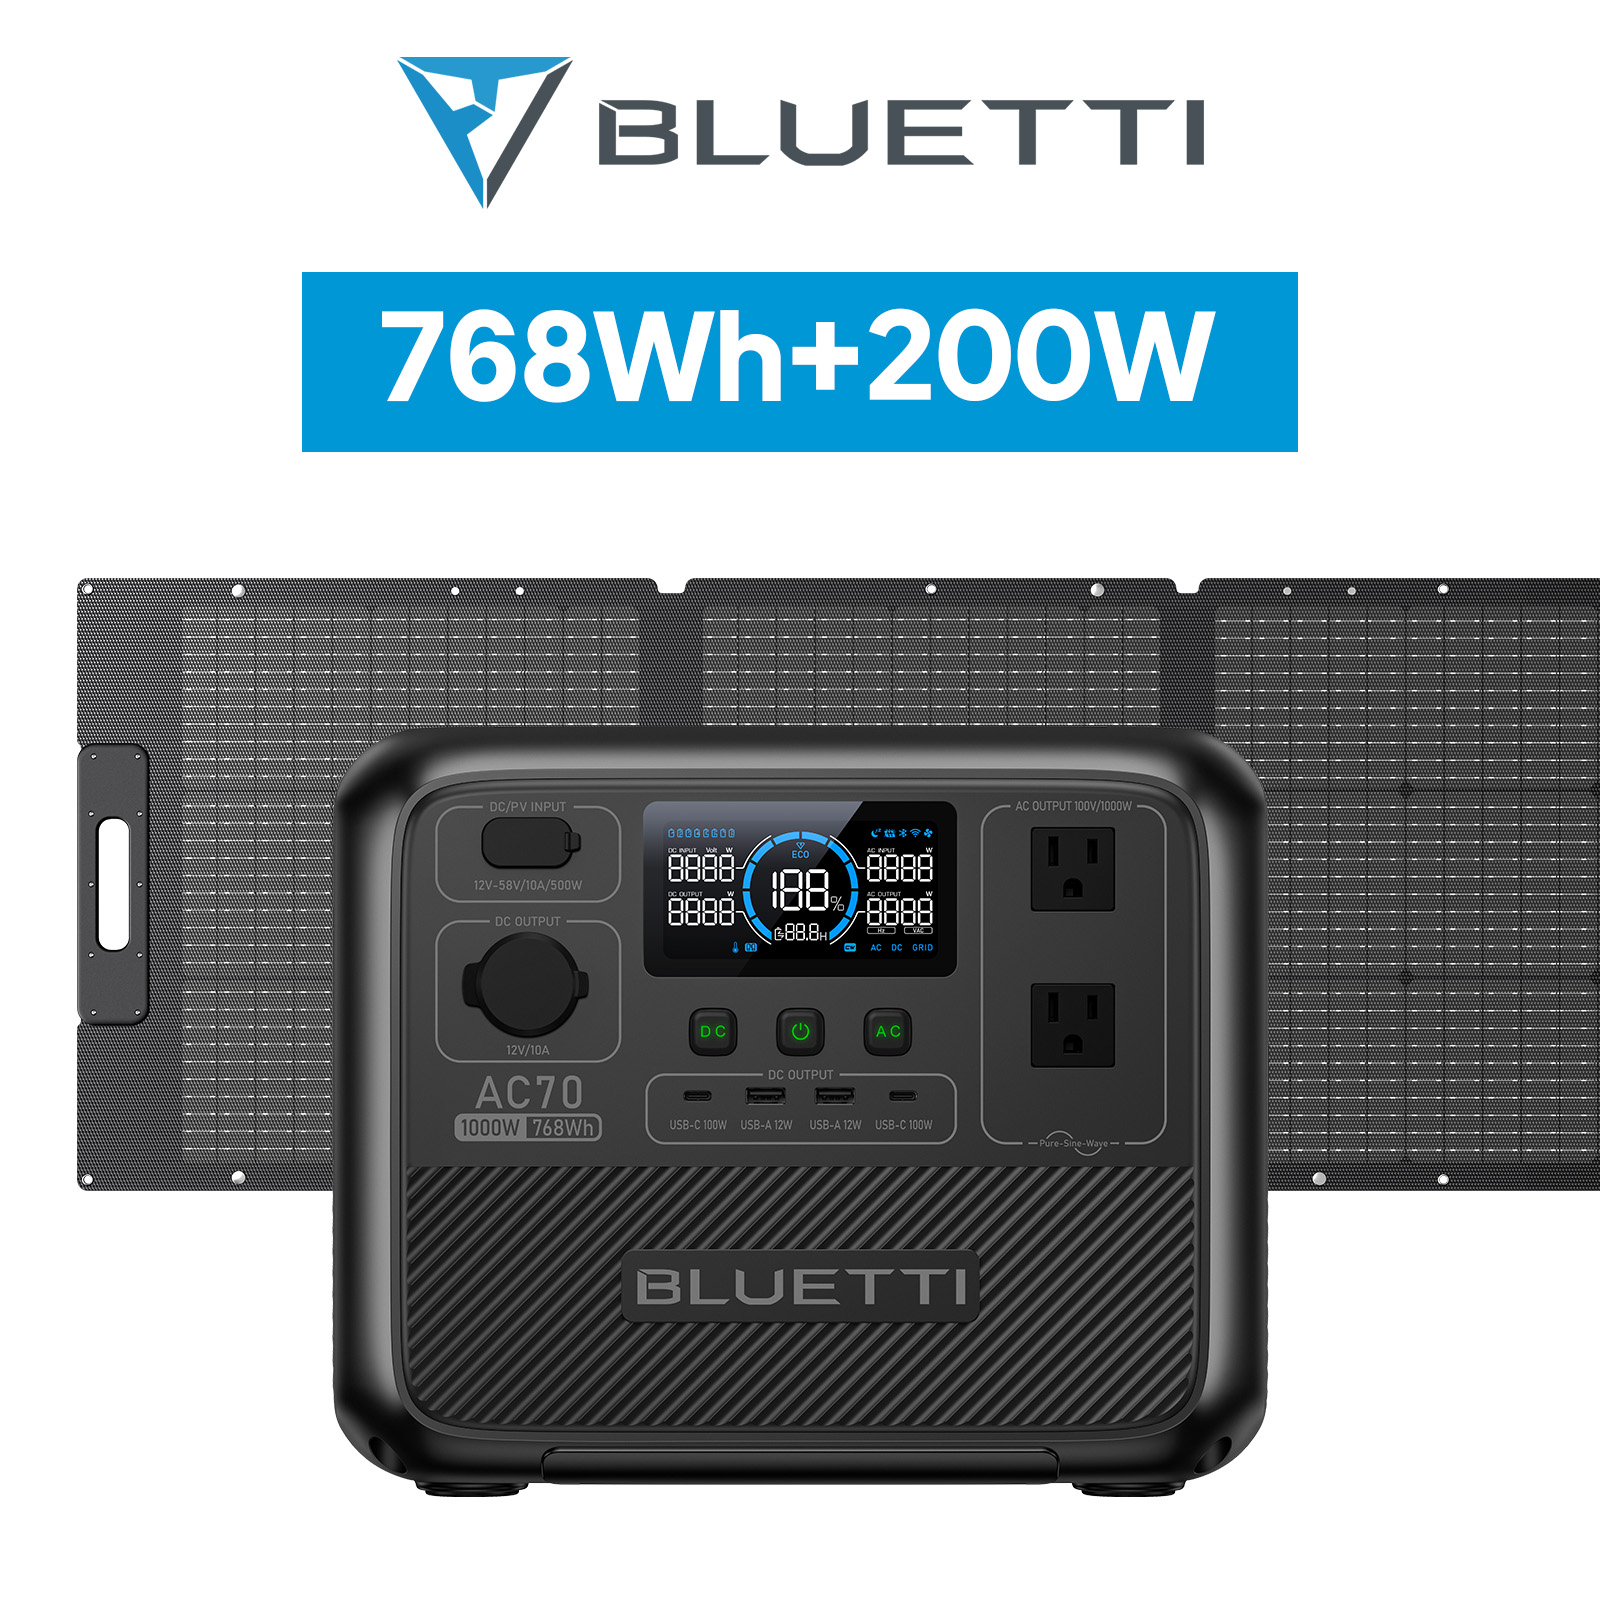 BLUETTI ポータブル電源 ソーラーパネル セット AC70+200W 768Wh/1000W 